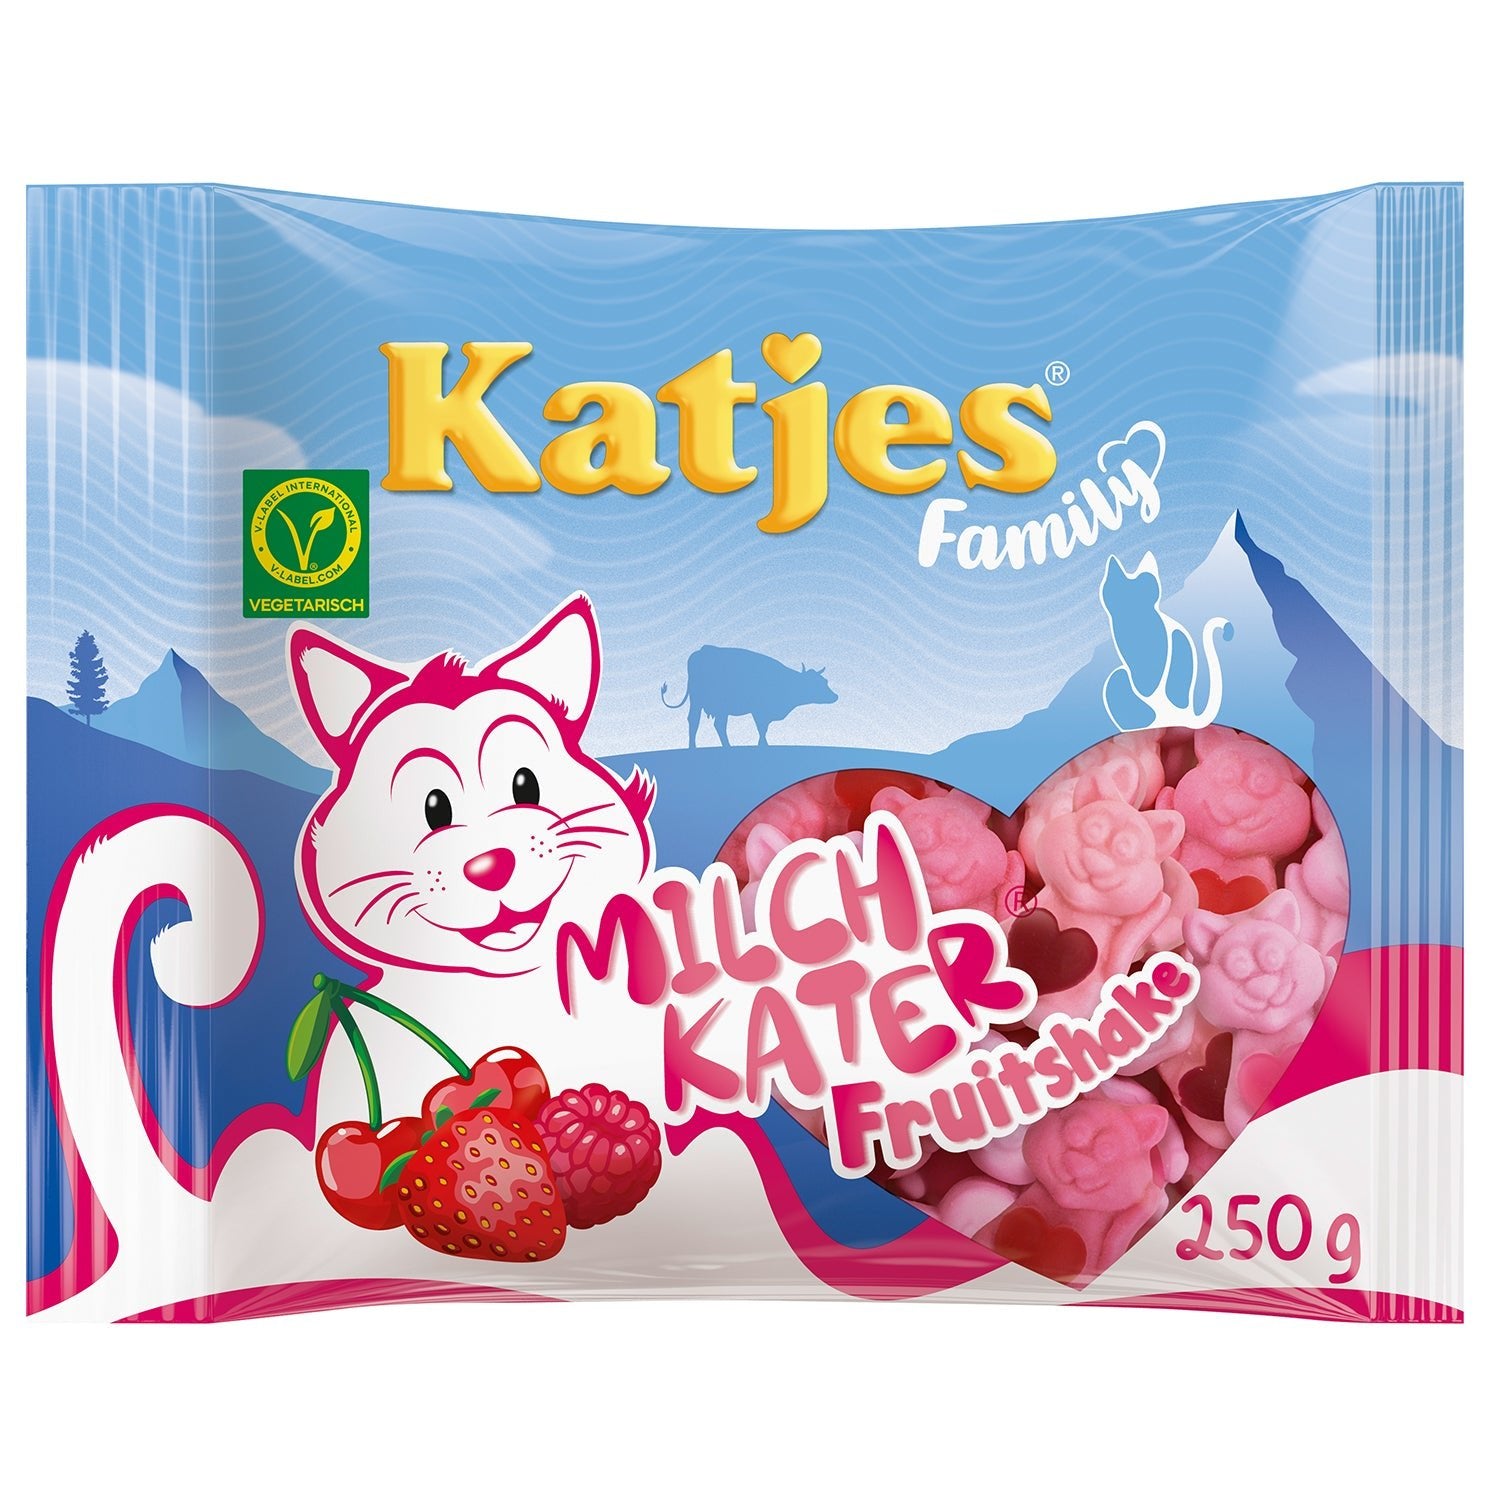 Katjes Family Milchkater Fruitshake 250g - Candyshop.ch